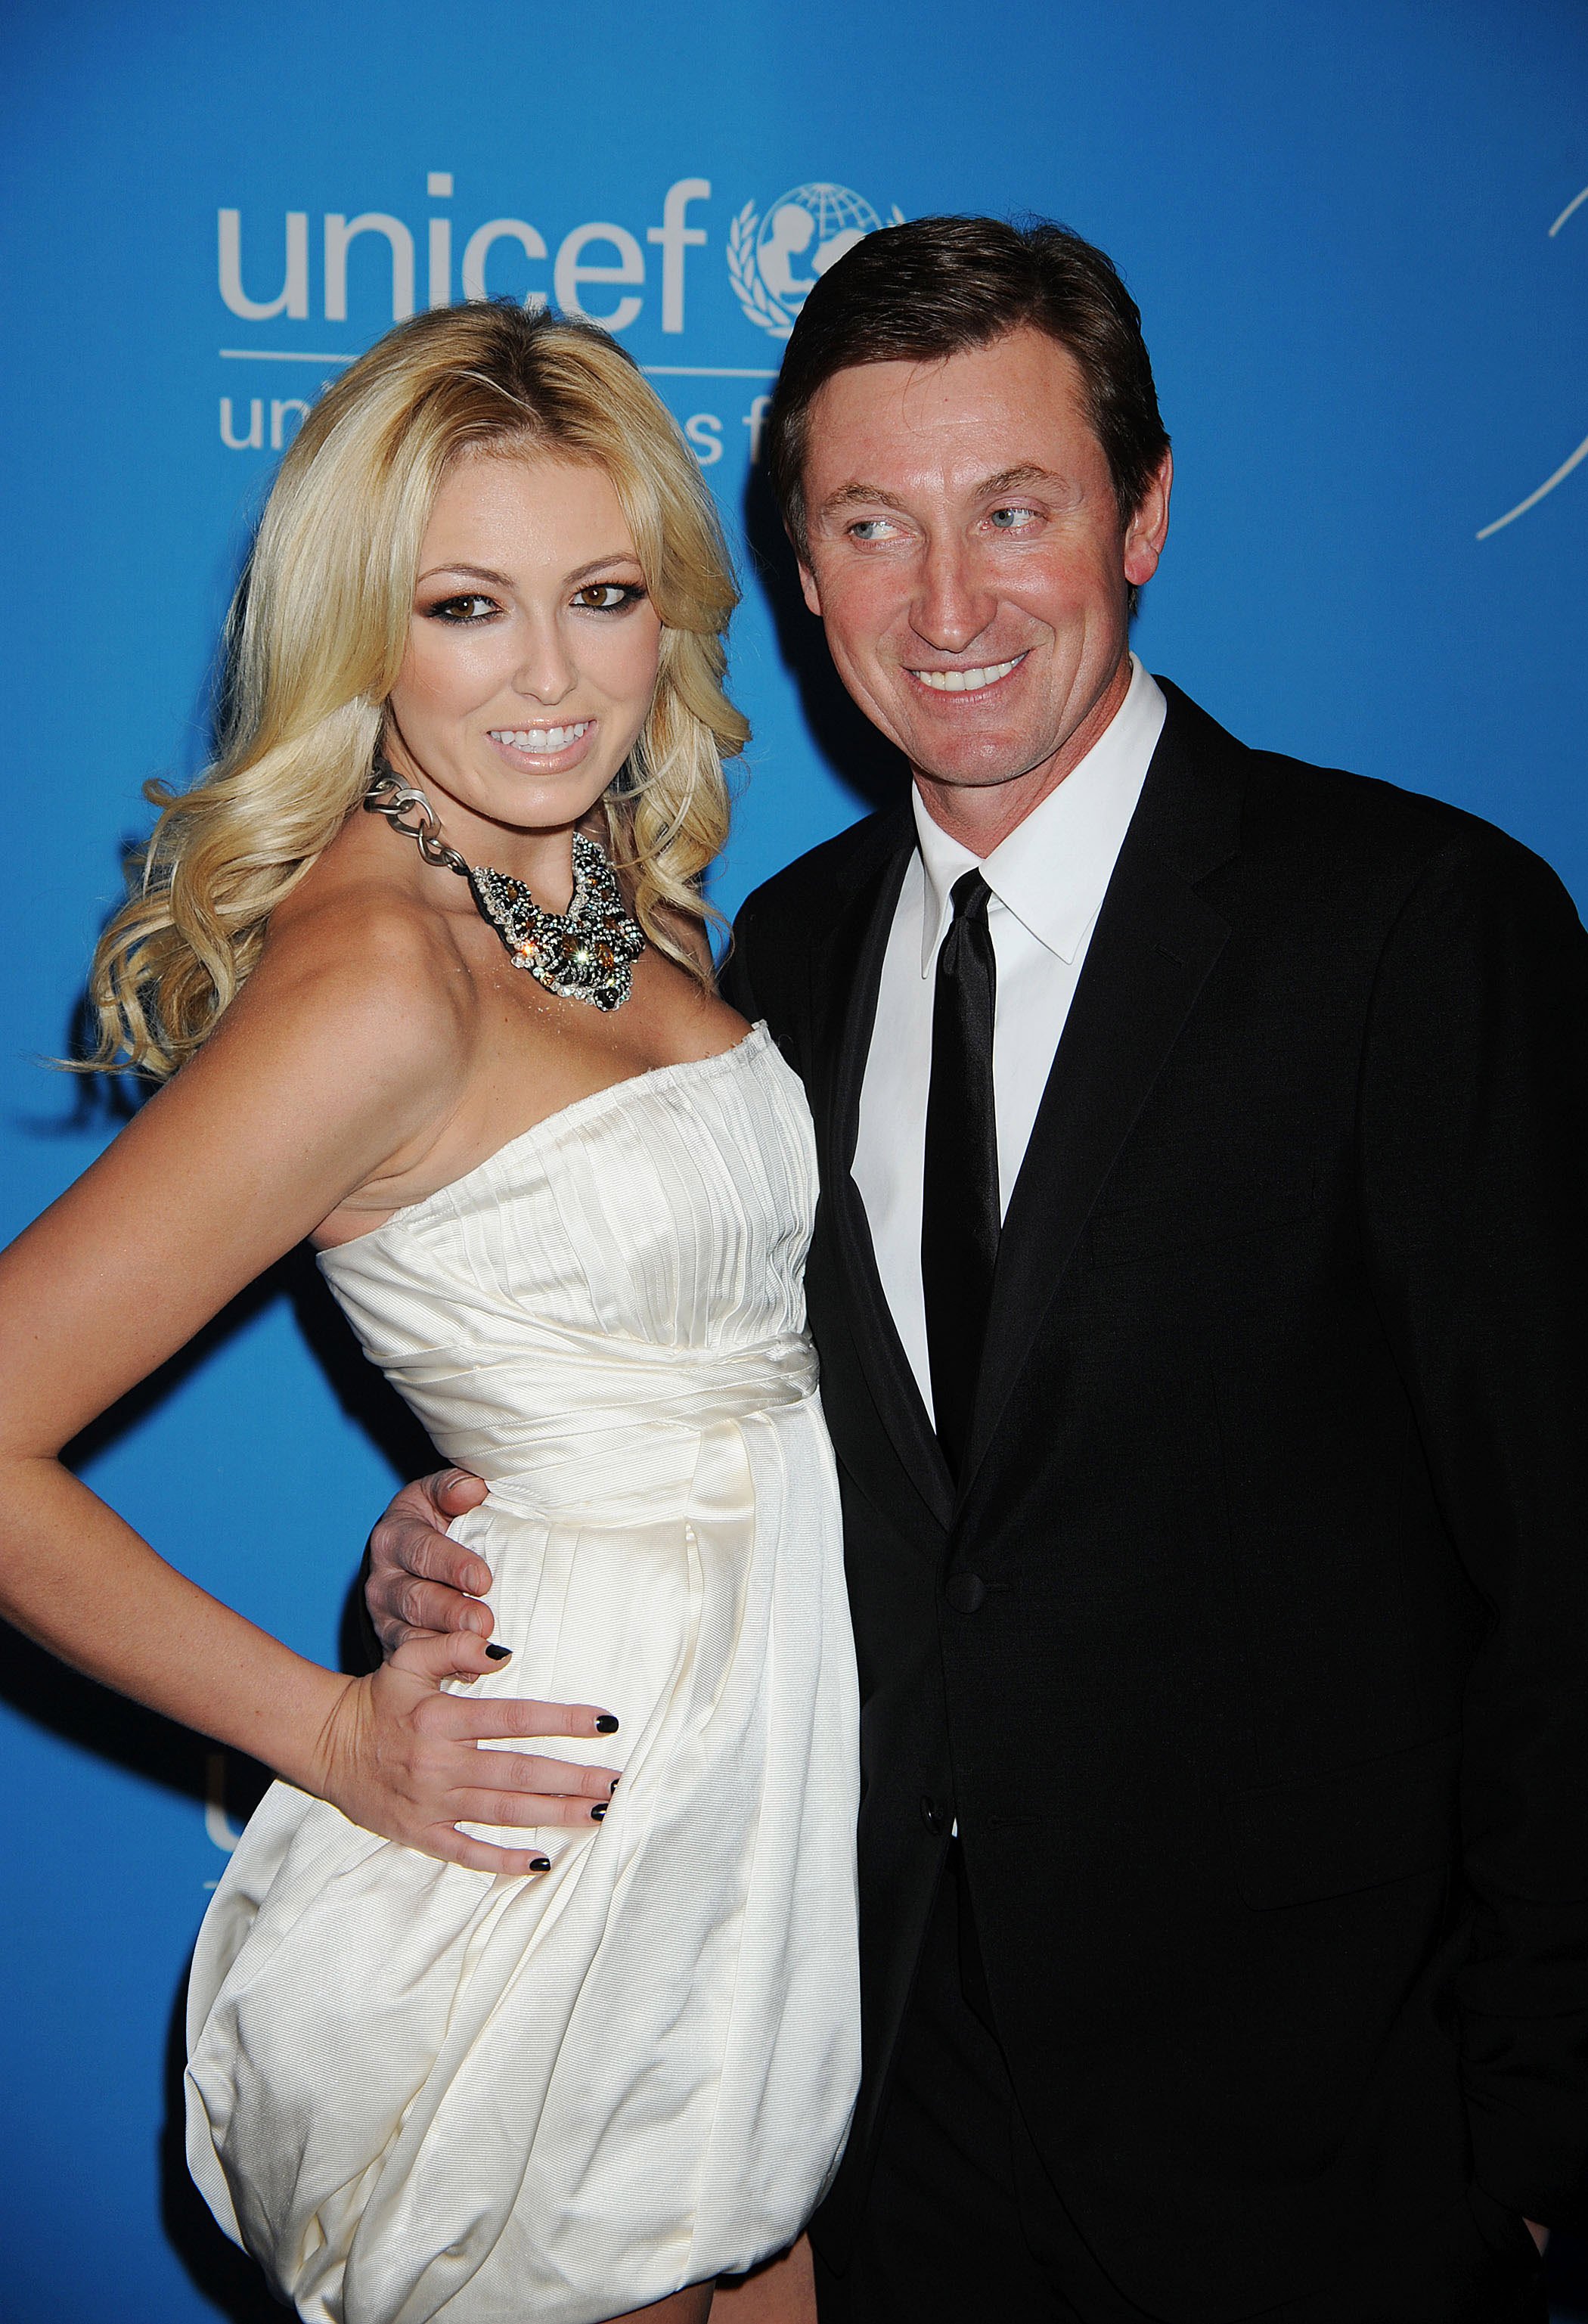 Wayne Gretzky and daughter Paulina Gretzky